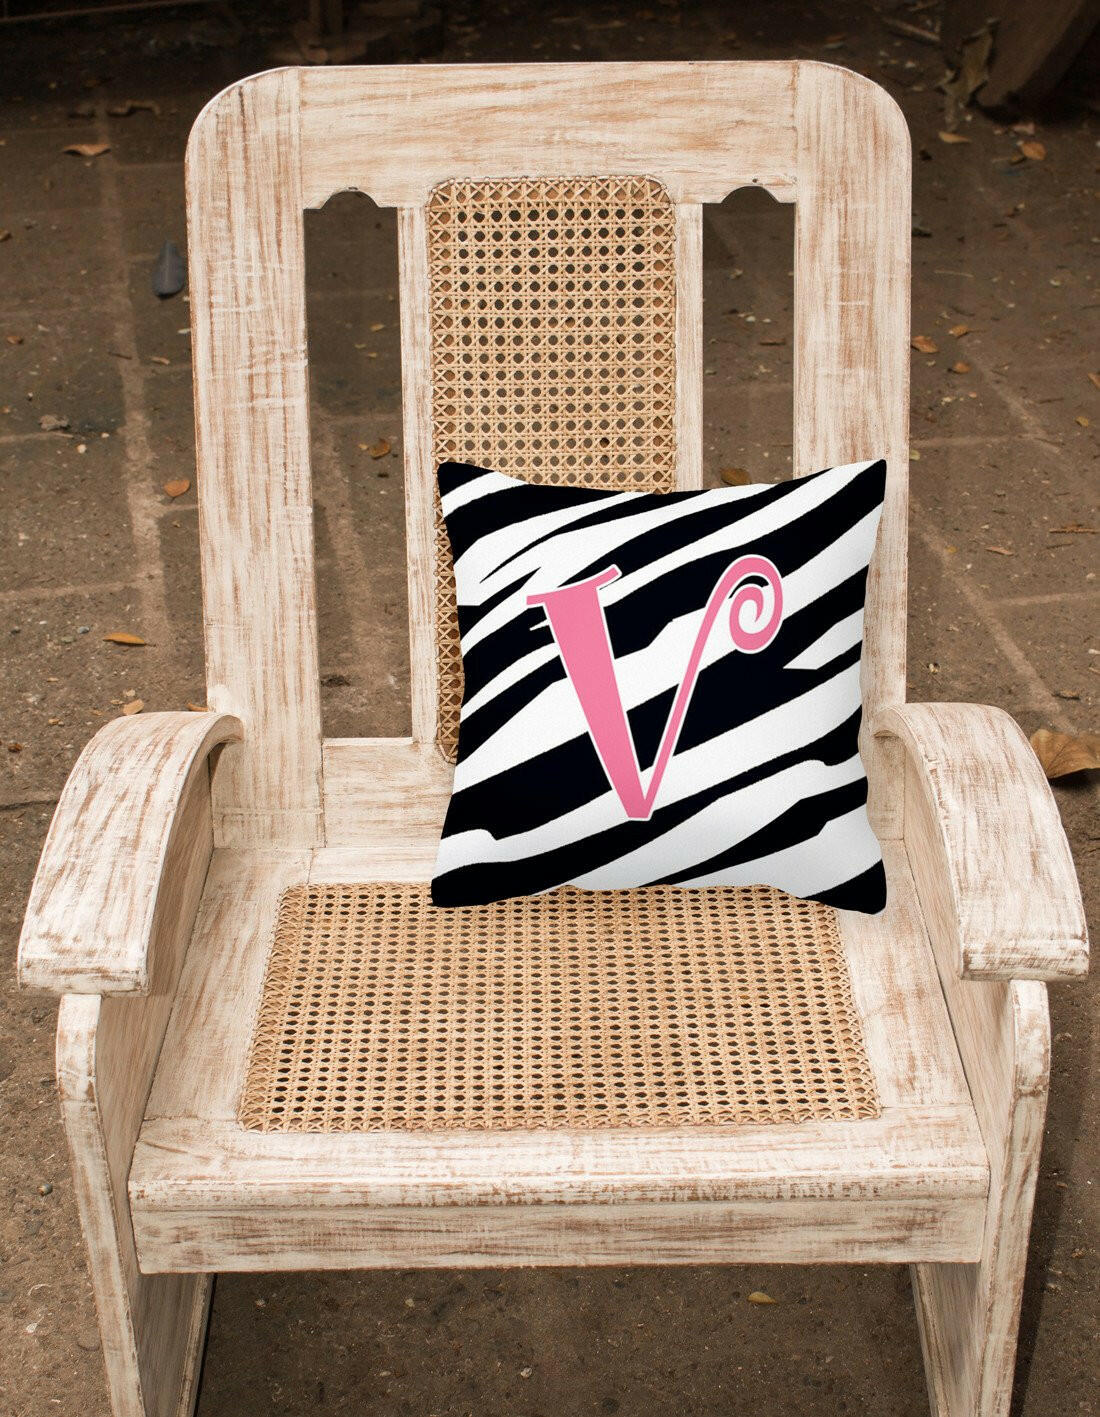 Monogram Initial V Zebra Stripe and Pink Decorative Canvas Fabric Pillow CJ1037 - the-store.com